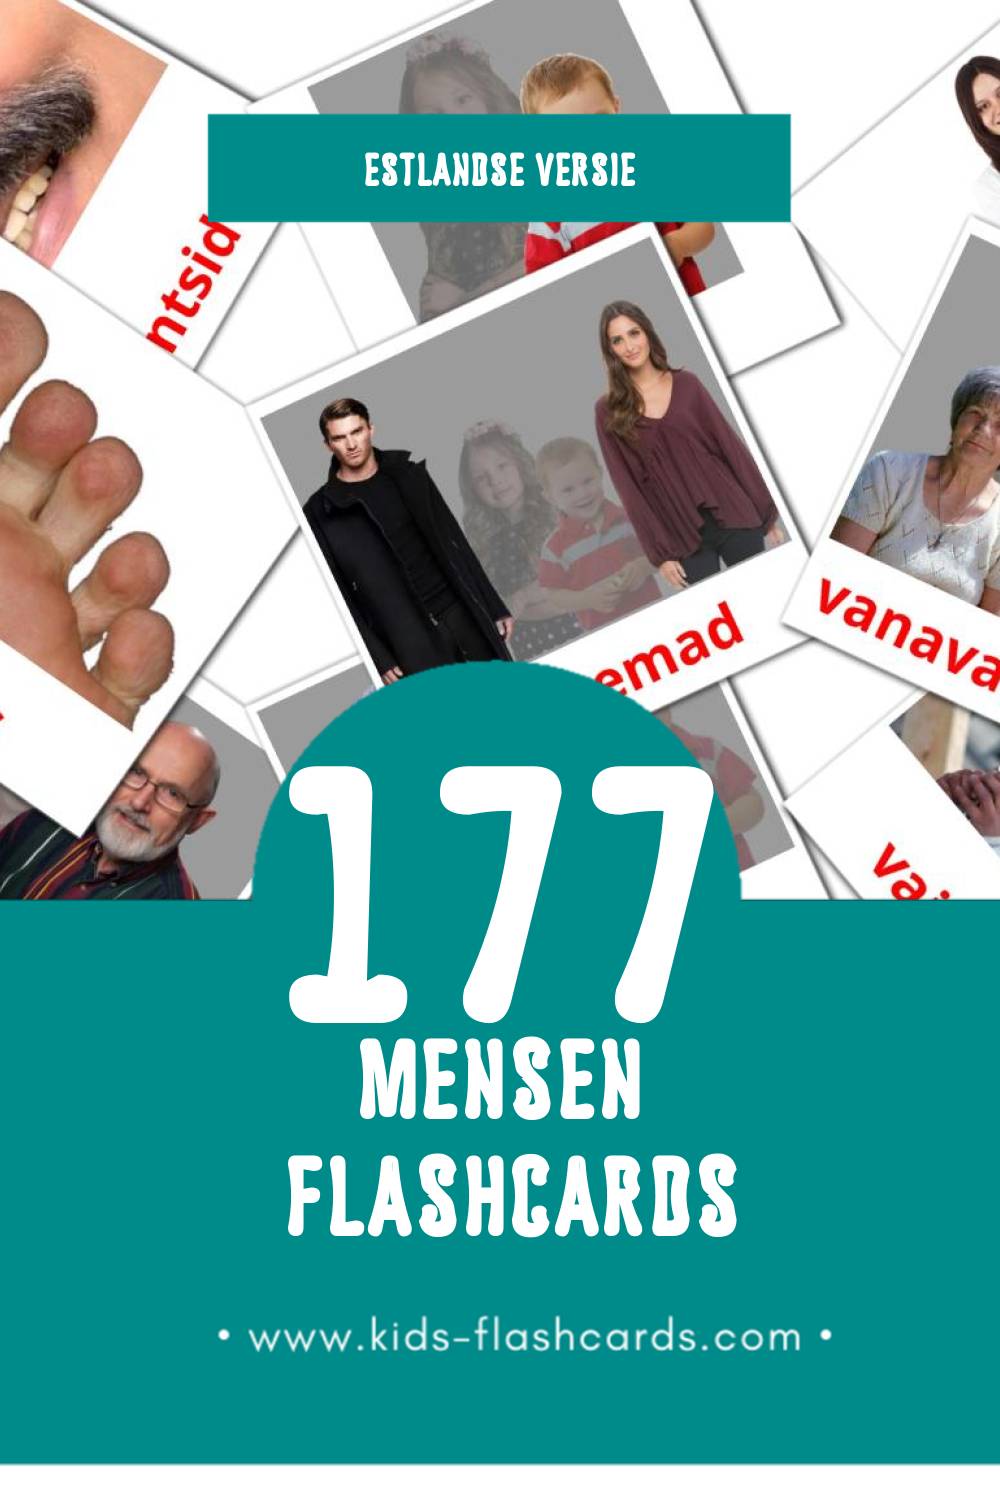 Visuele Inimesed Flashcards voor Kleuters (177 kaarten in het Estlands)